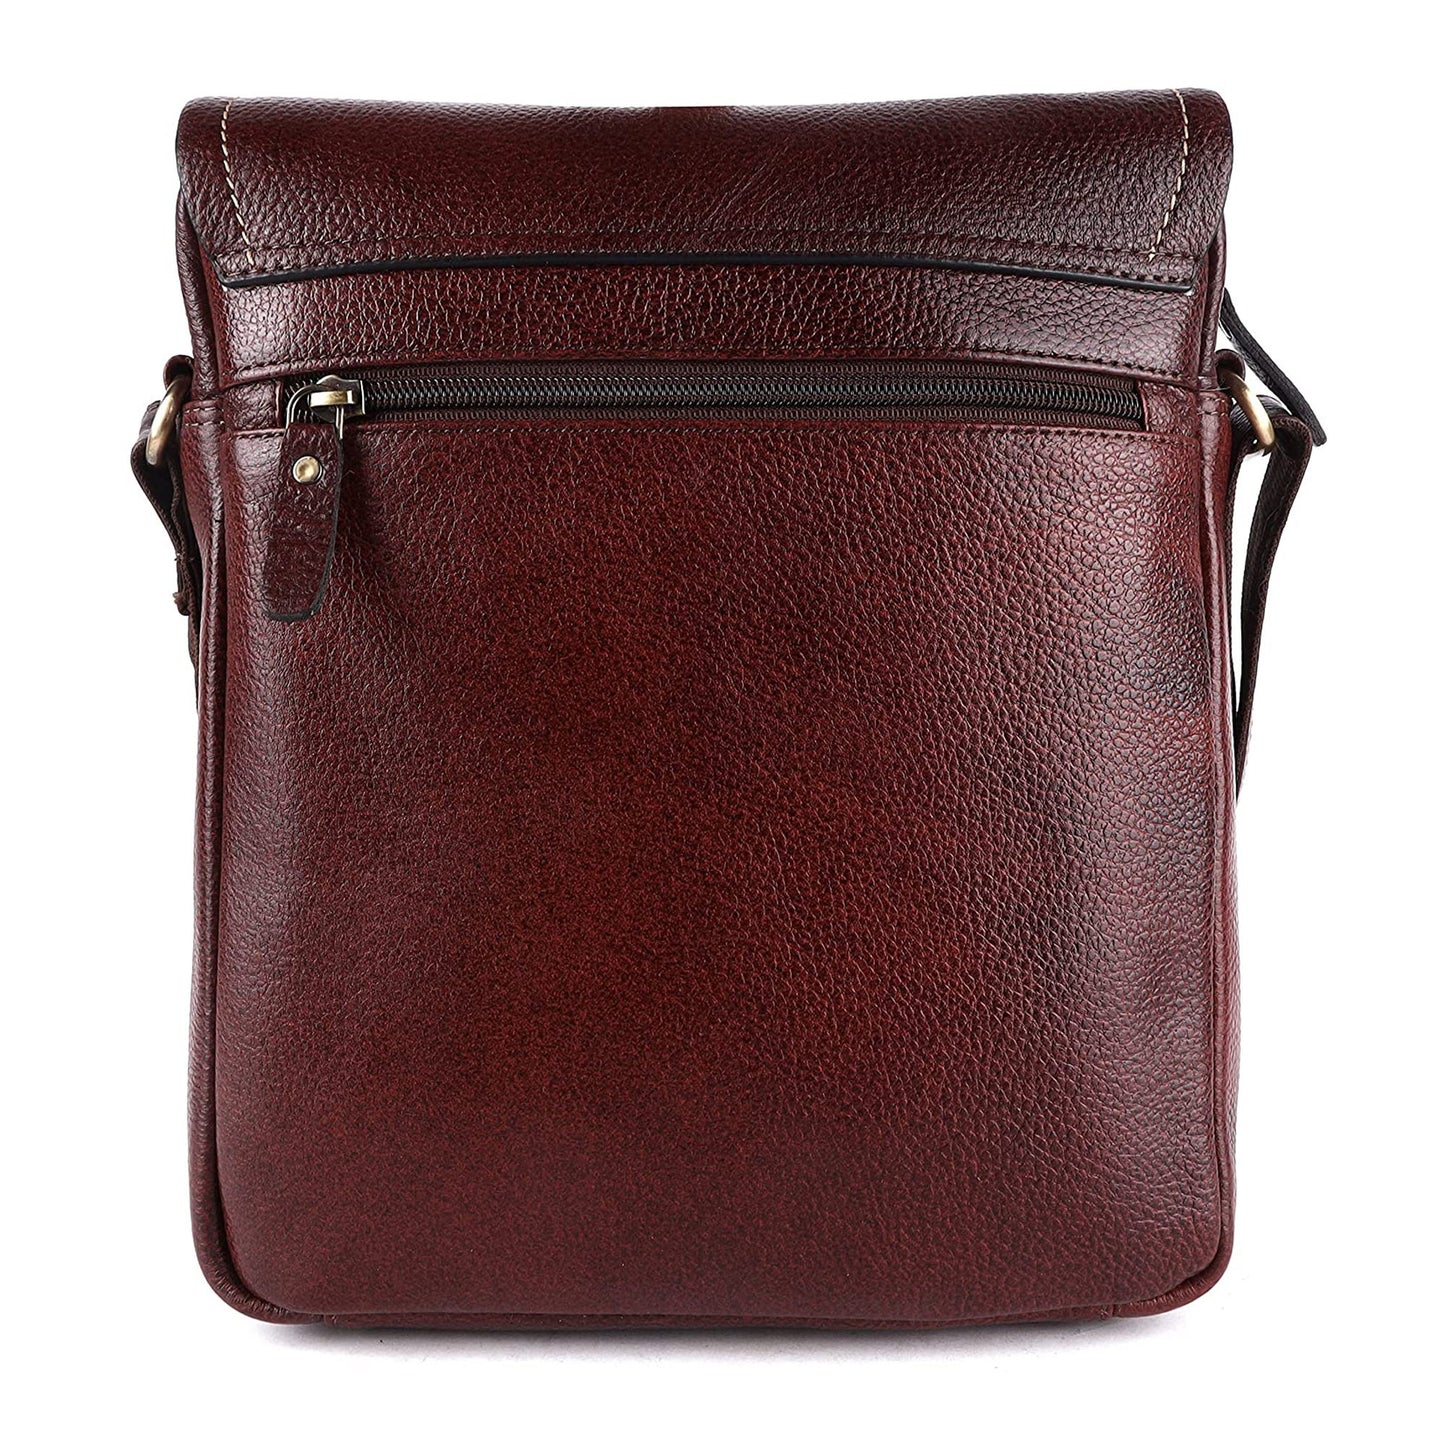 Men's Leather Messenger Bag, Men's Leather Sling Bag by LINDSEY STREET